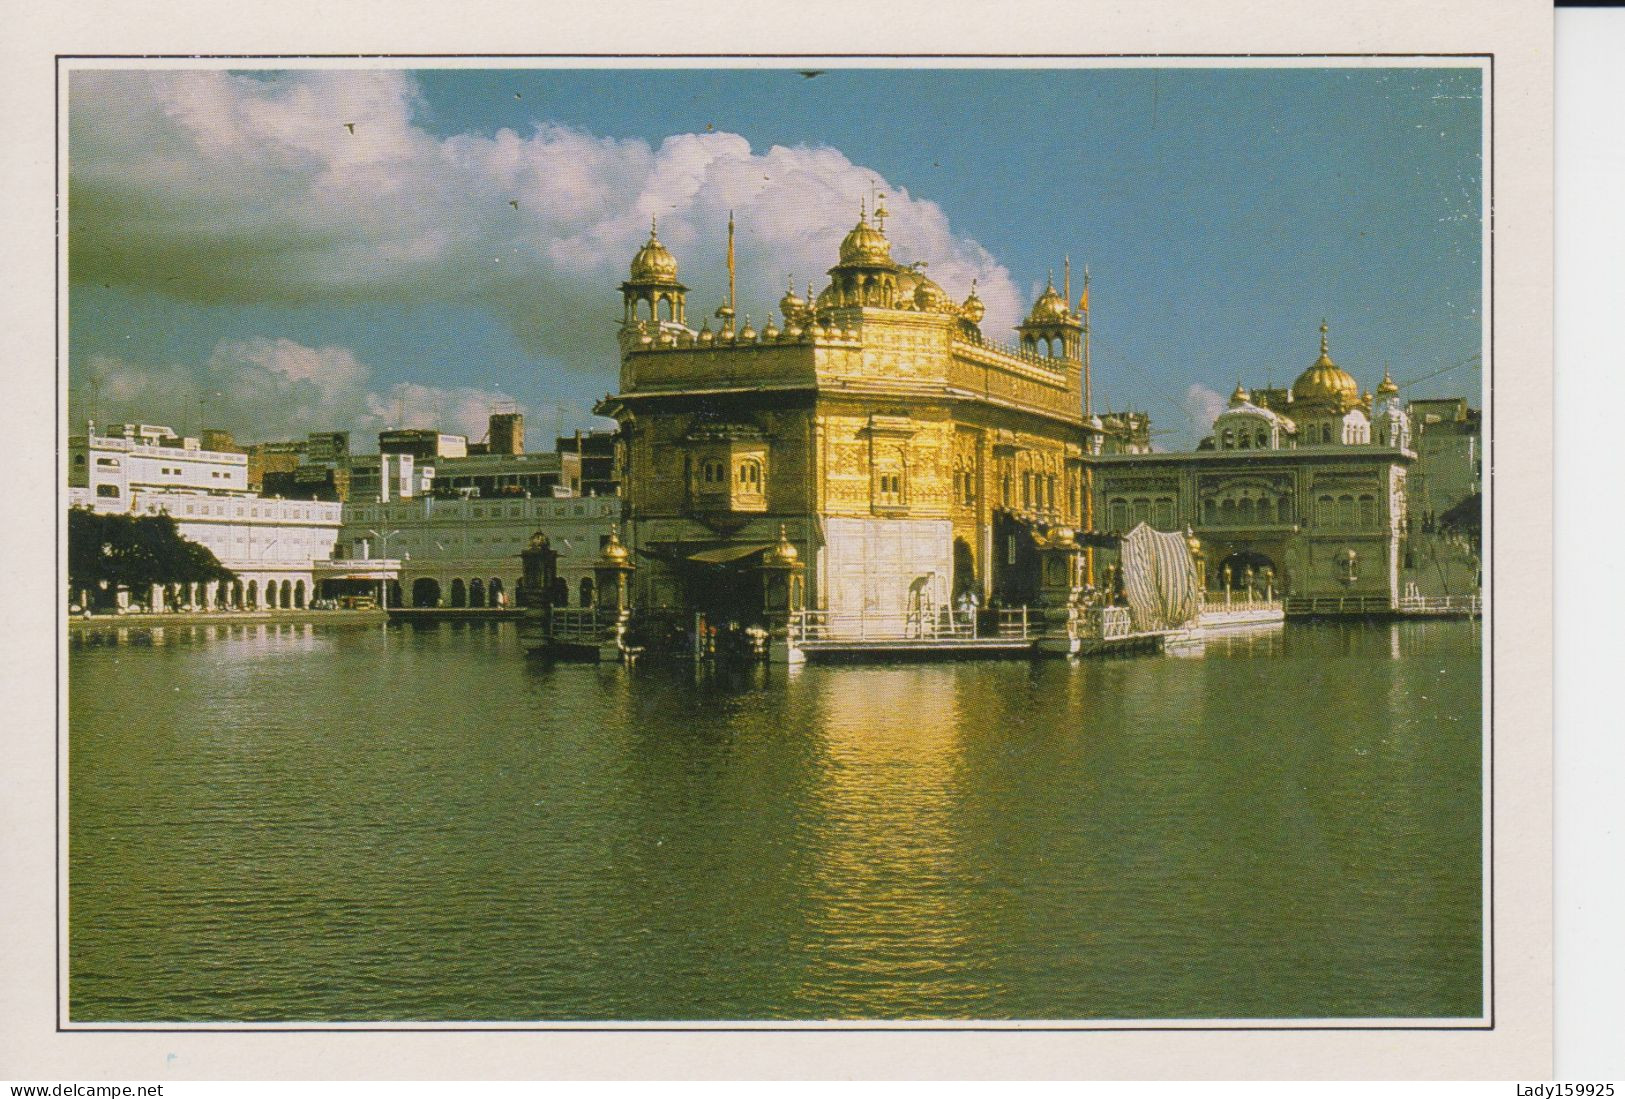 4 Cartes Inde Bénarès Evocation Ramayana Ladakh Monastère de Rizong Rajasthan Mont Abu Amritsar Golden Temple   CM 2 sc